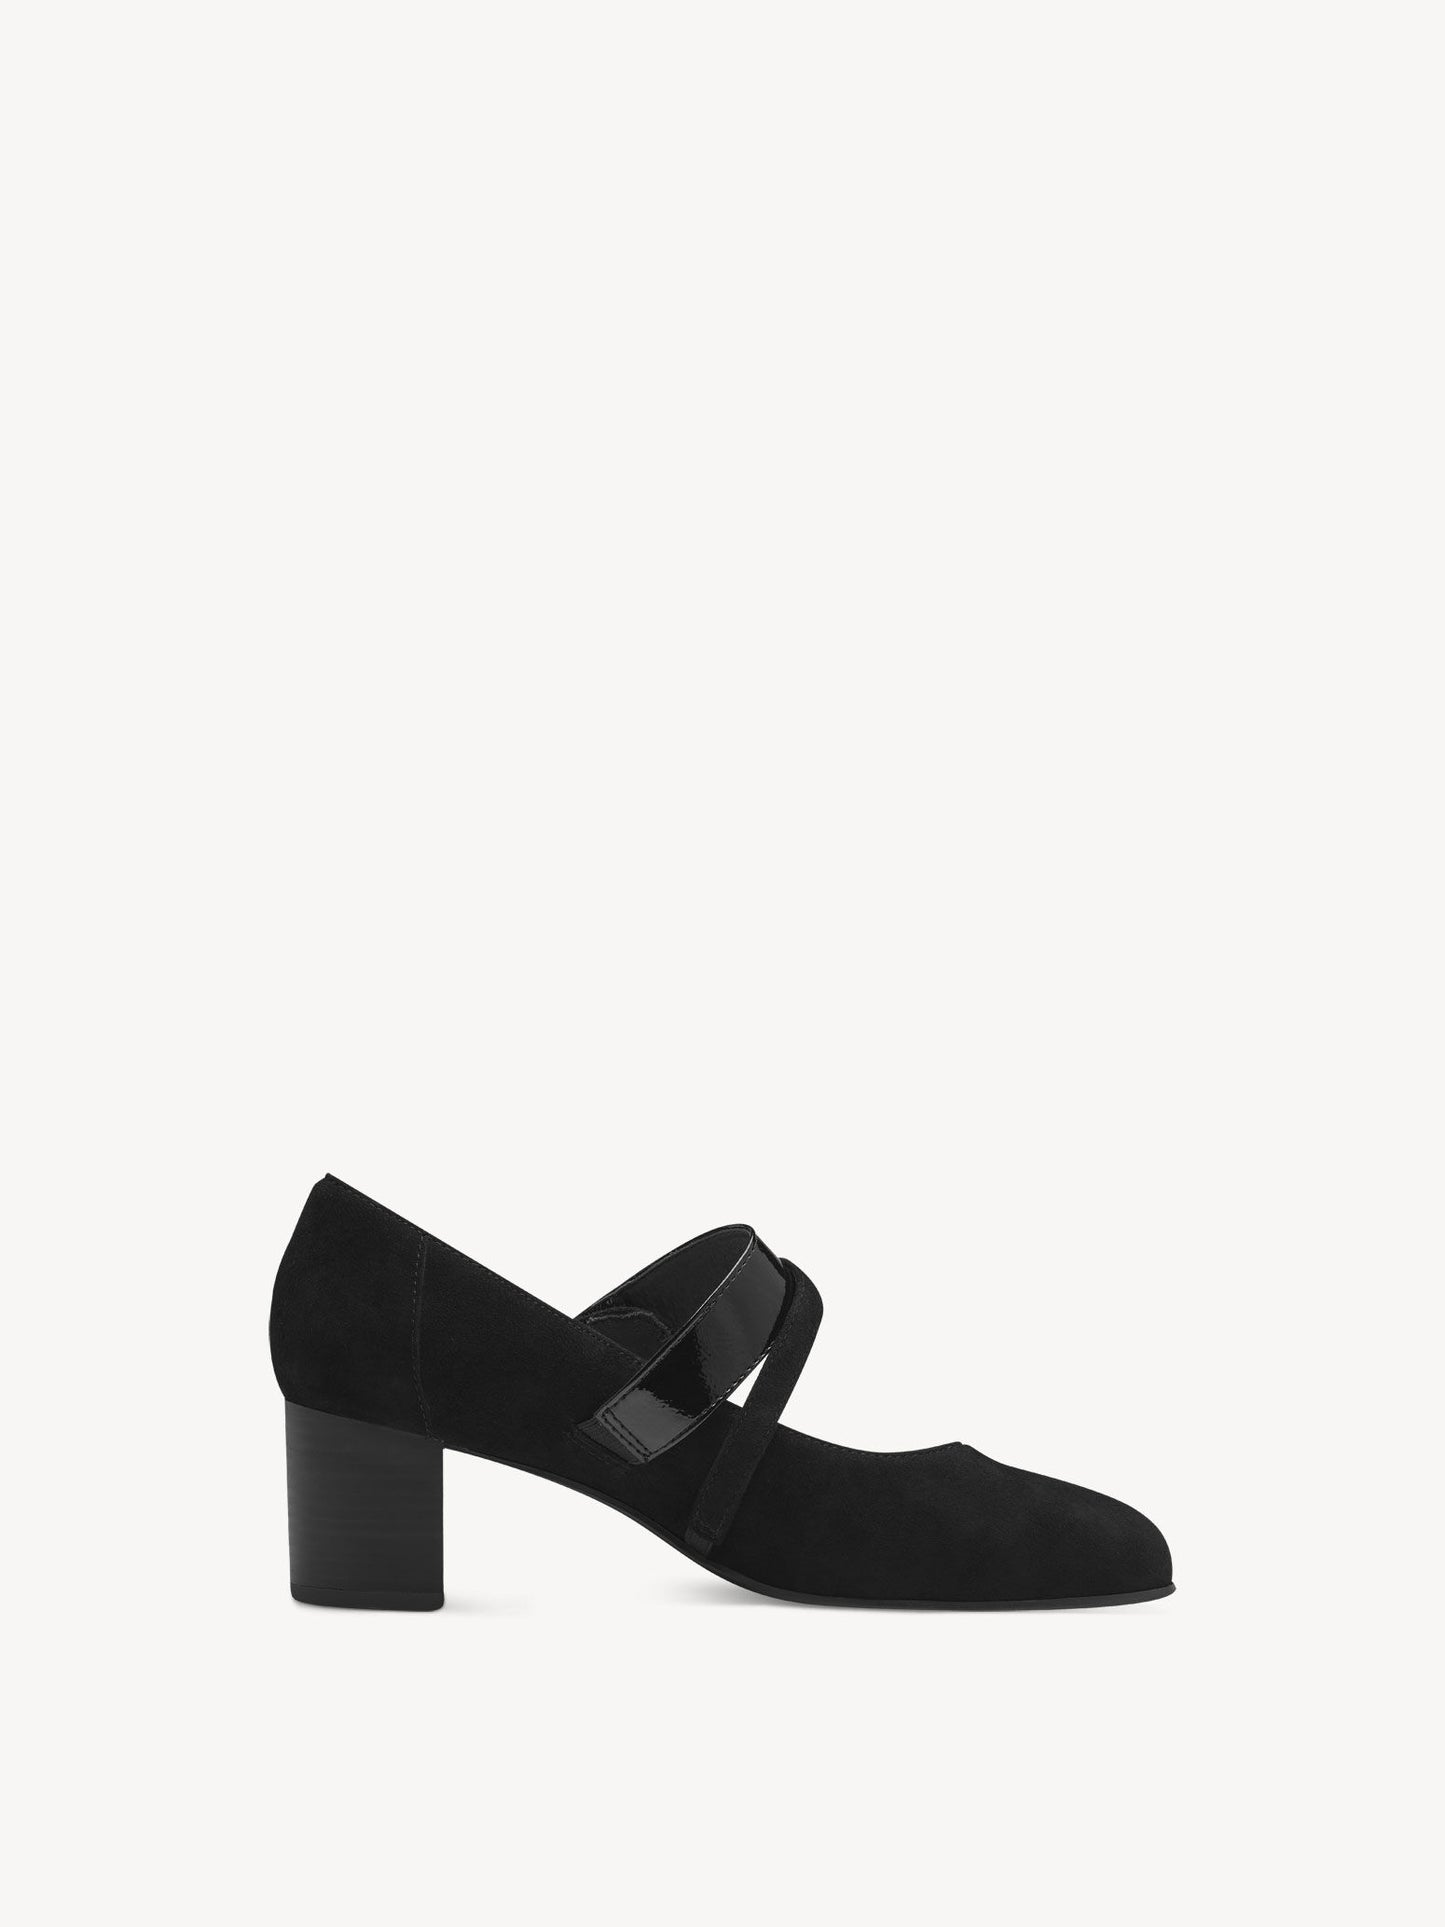 Tamaris Women's 8-84401-42 Leather Pump Shoes Black